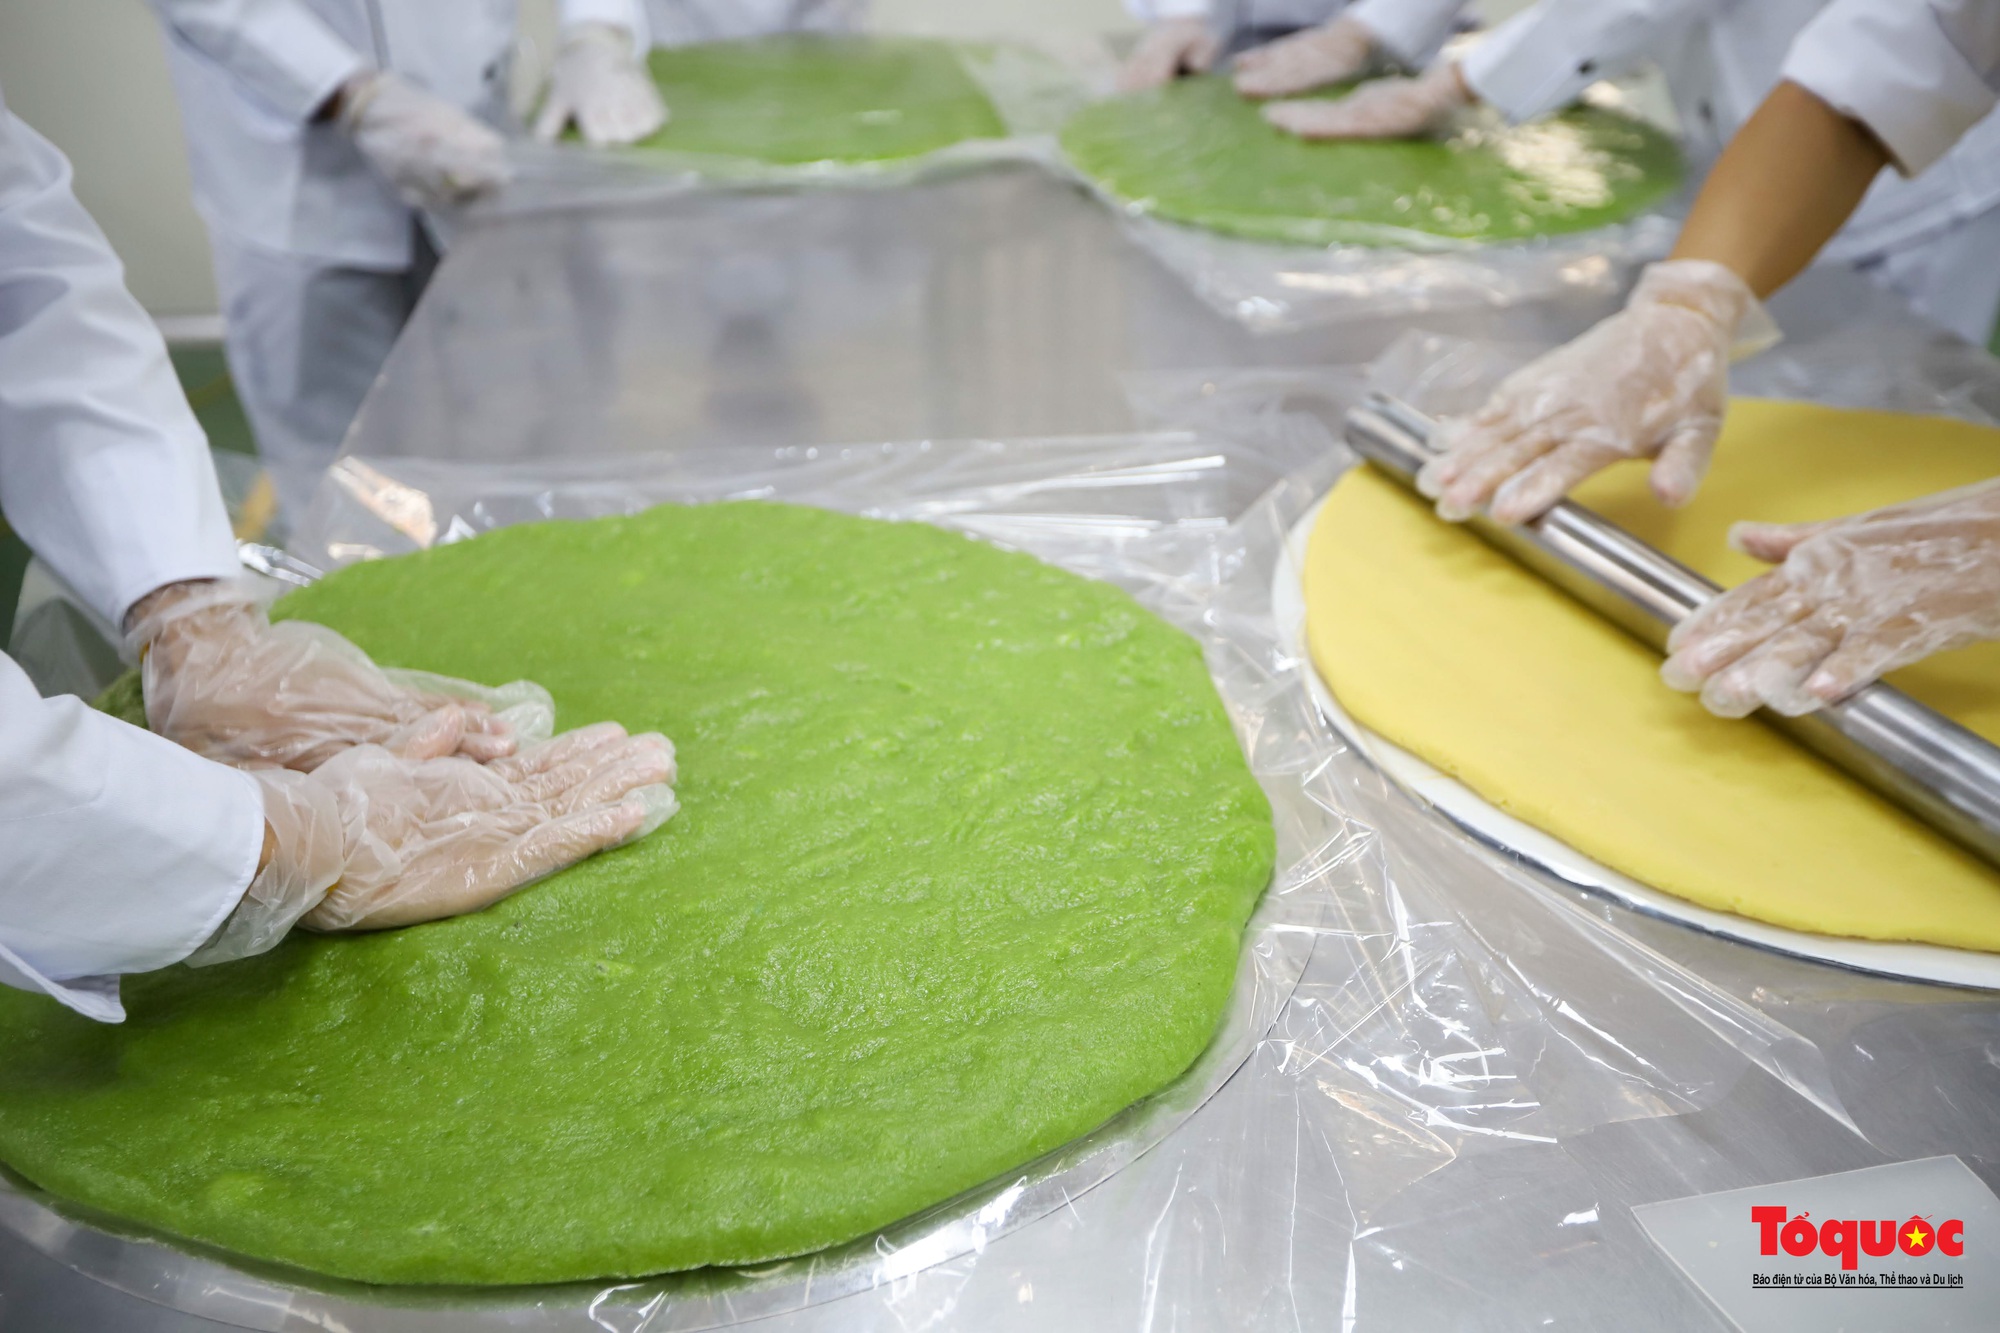 Cận cảnh công đoạn sản xuất cặp bánh cưới kỷ lục Việt Nam - Ảnh 10.